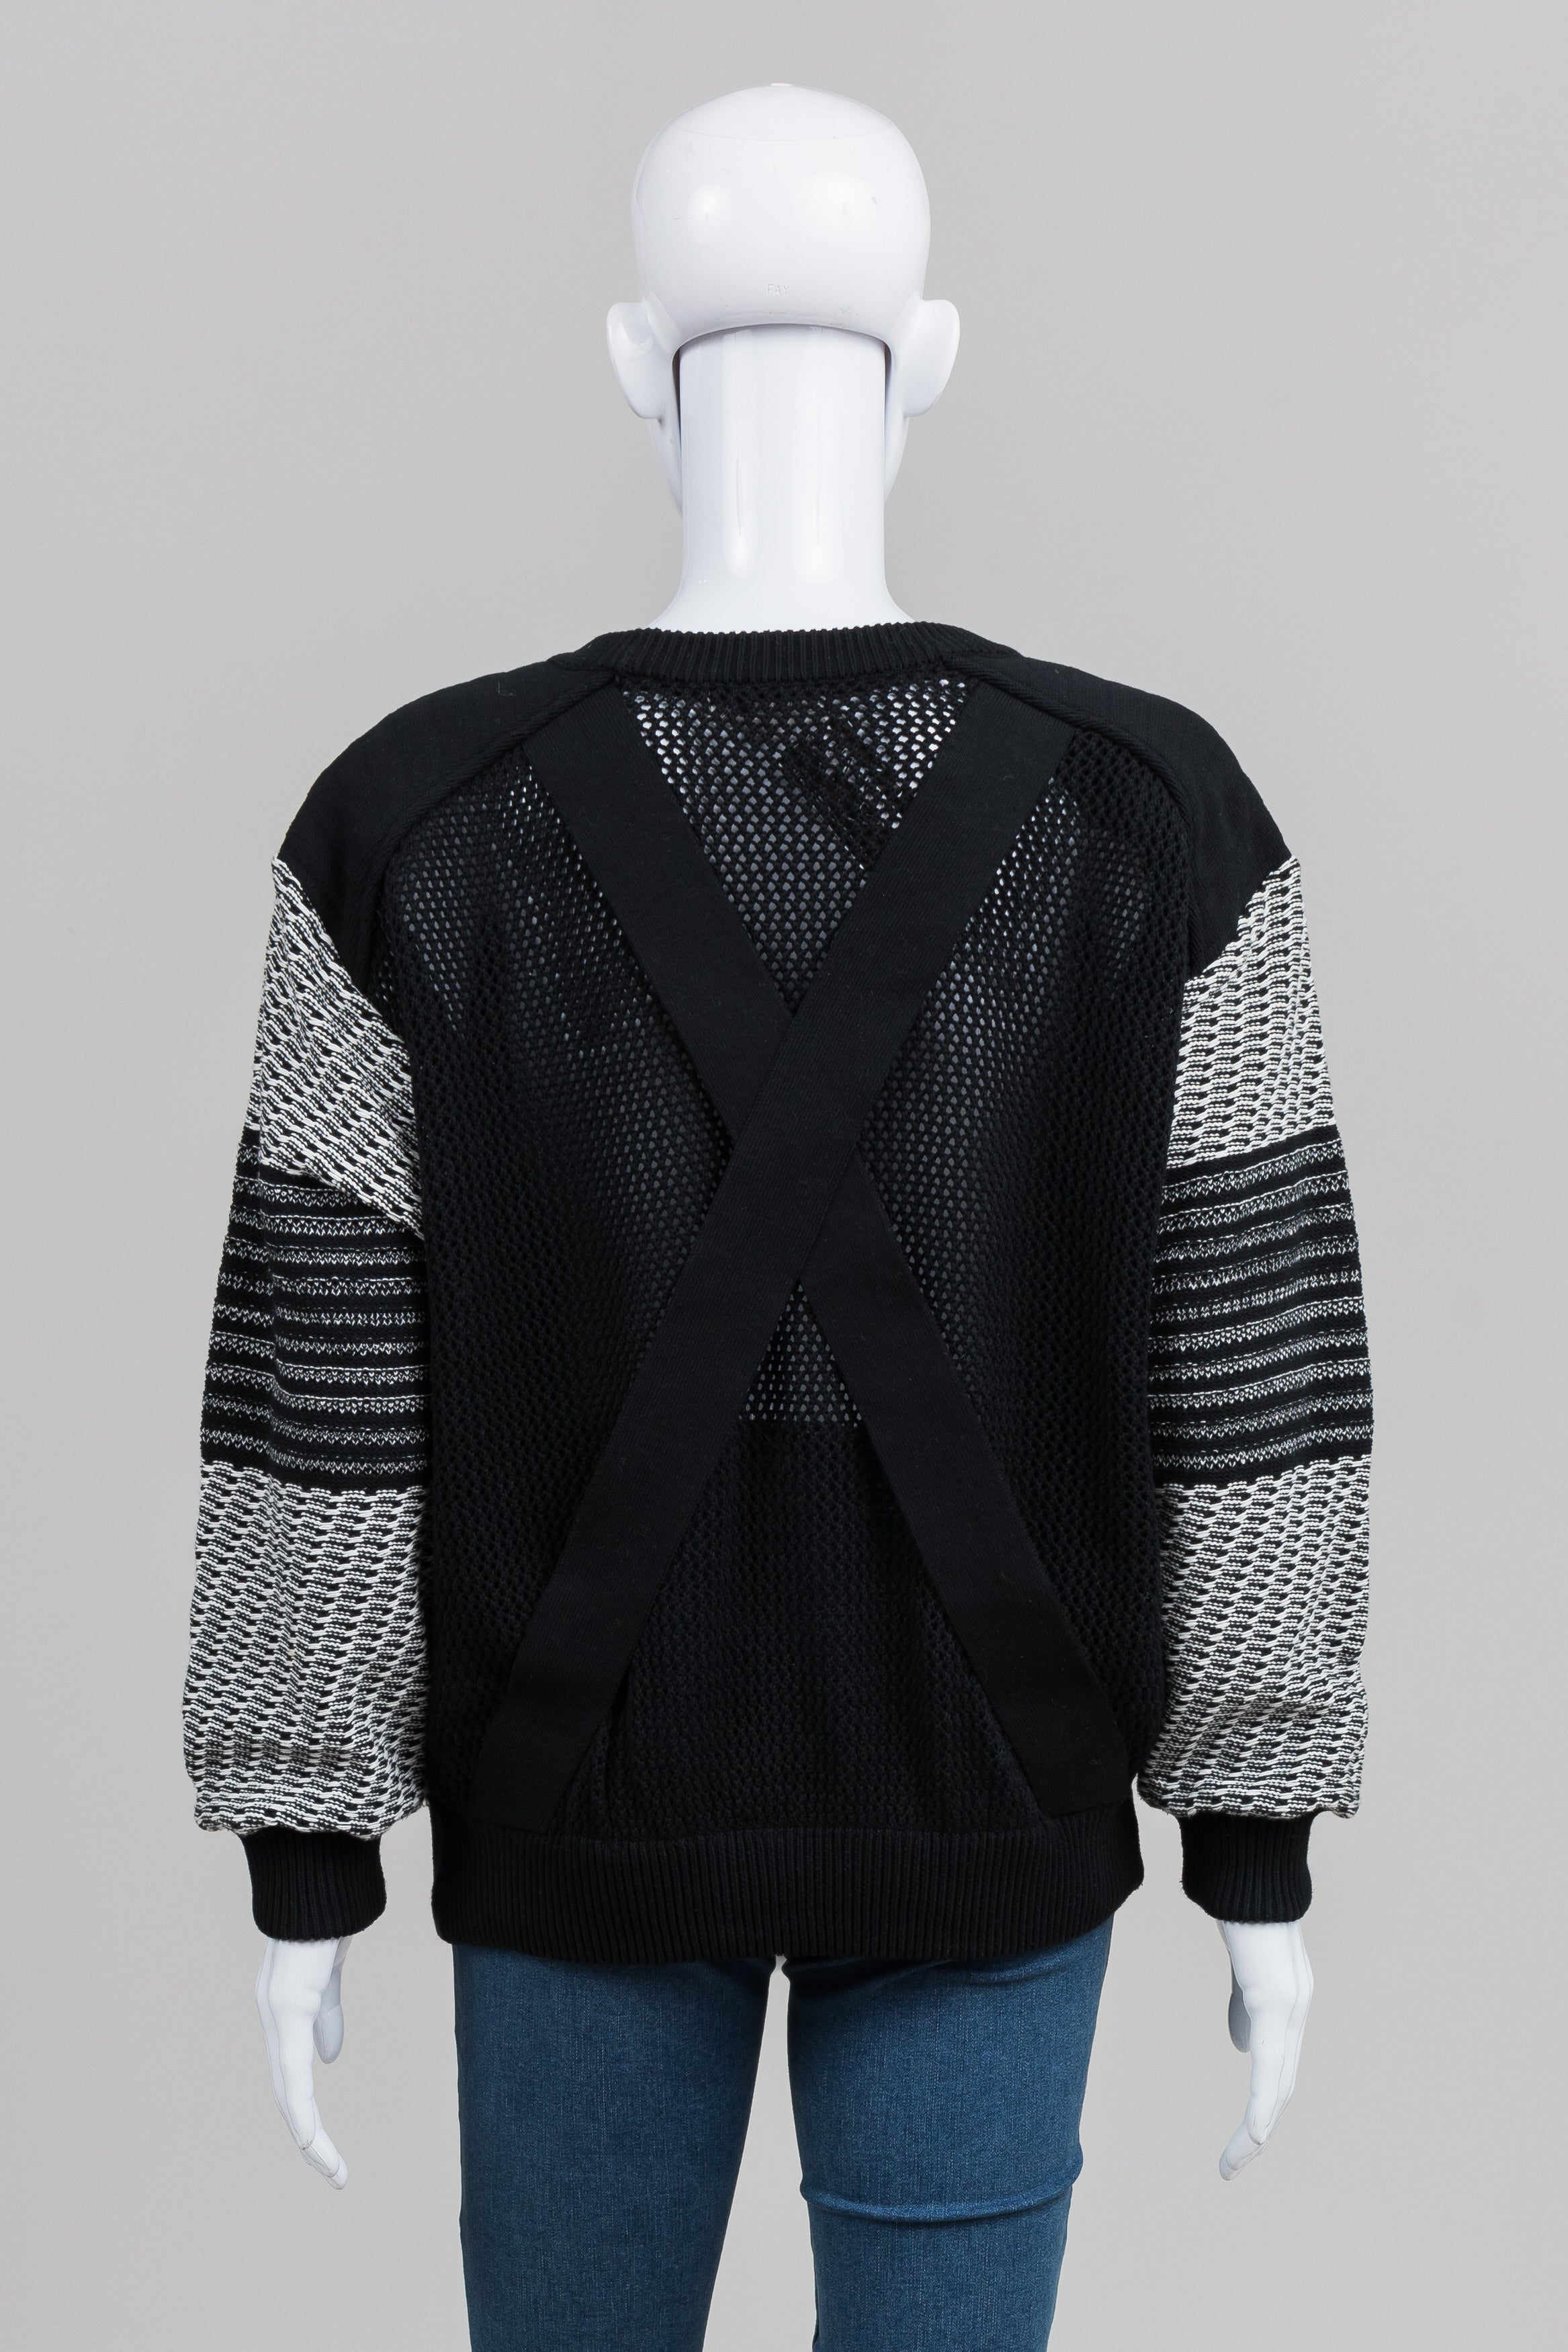 Kansai O2 Yamamoto Vintage Black Textured Sweater w/ Applique (S)